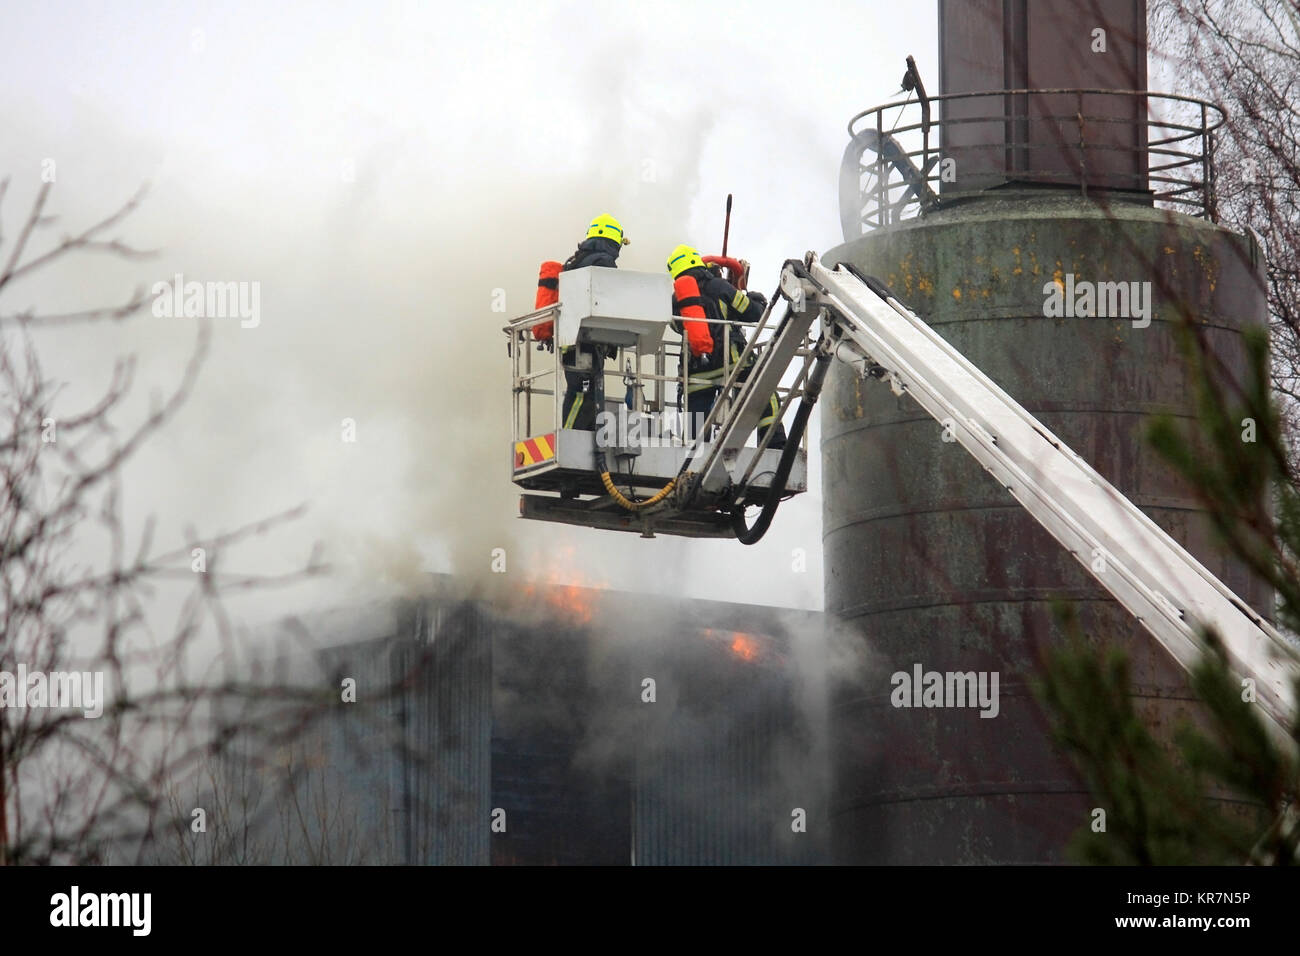 SALO, FINLANDE - le 16 février 2014 : Les pompiers d'éteindre le feu sur une grue hydraulique plate-forme à l'usine de ciment de Salo. Banque D'Images